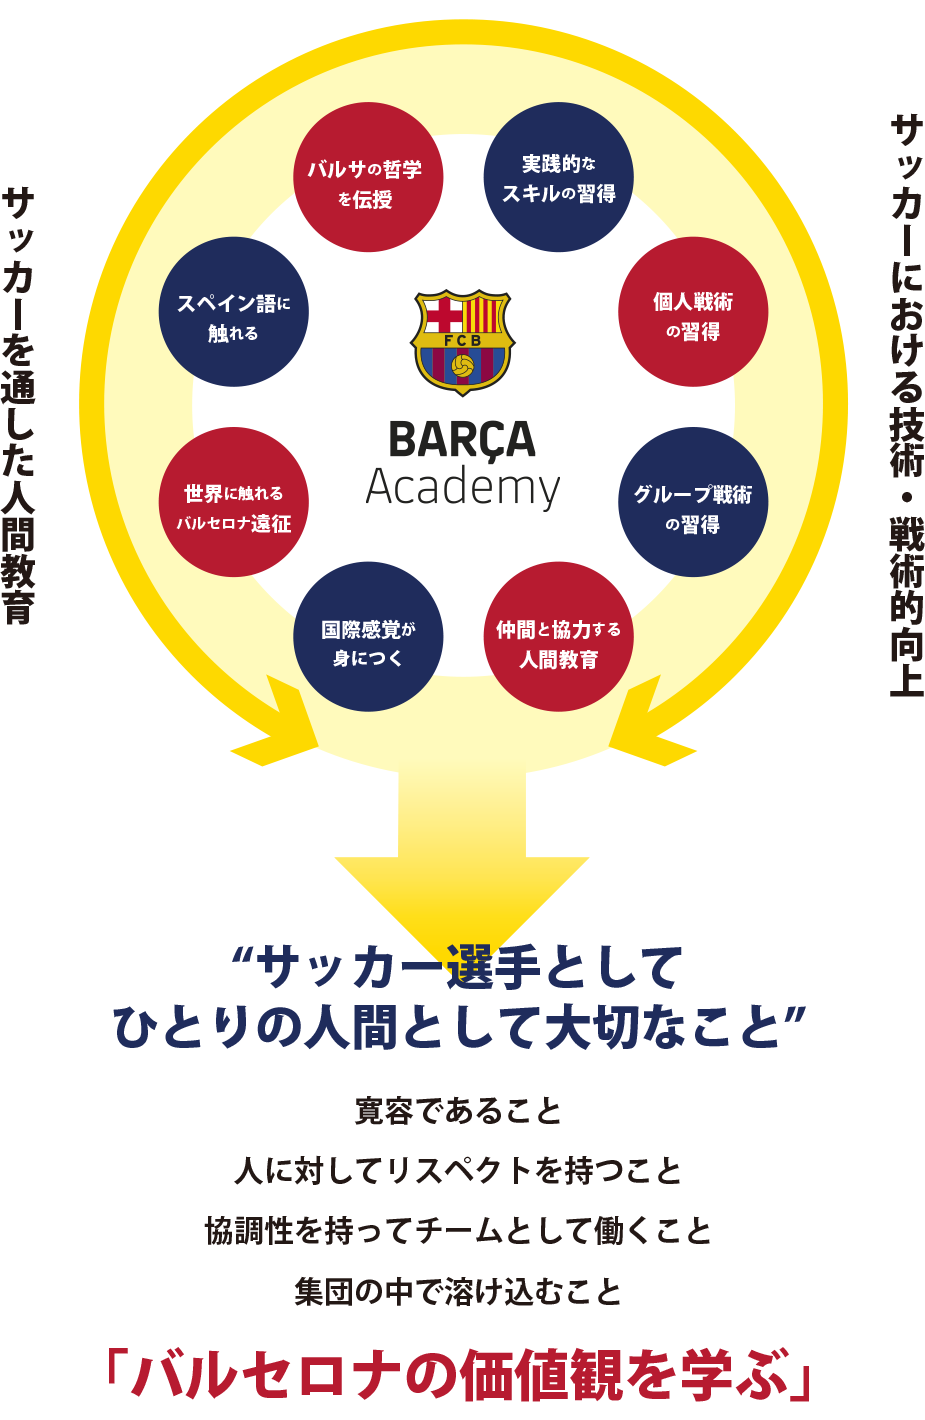 新横浜 にバルサアカデミー開校 株式会社amazing Sports Lab Japanのプレスリリース